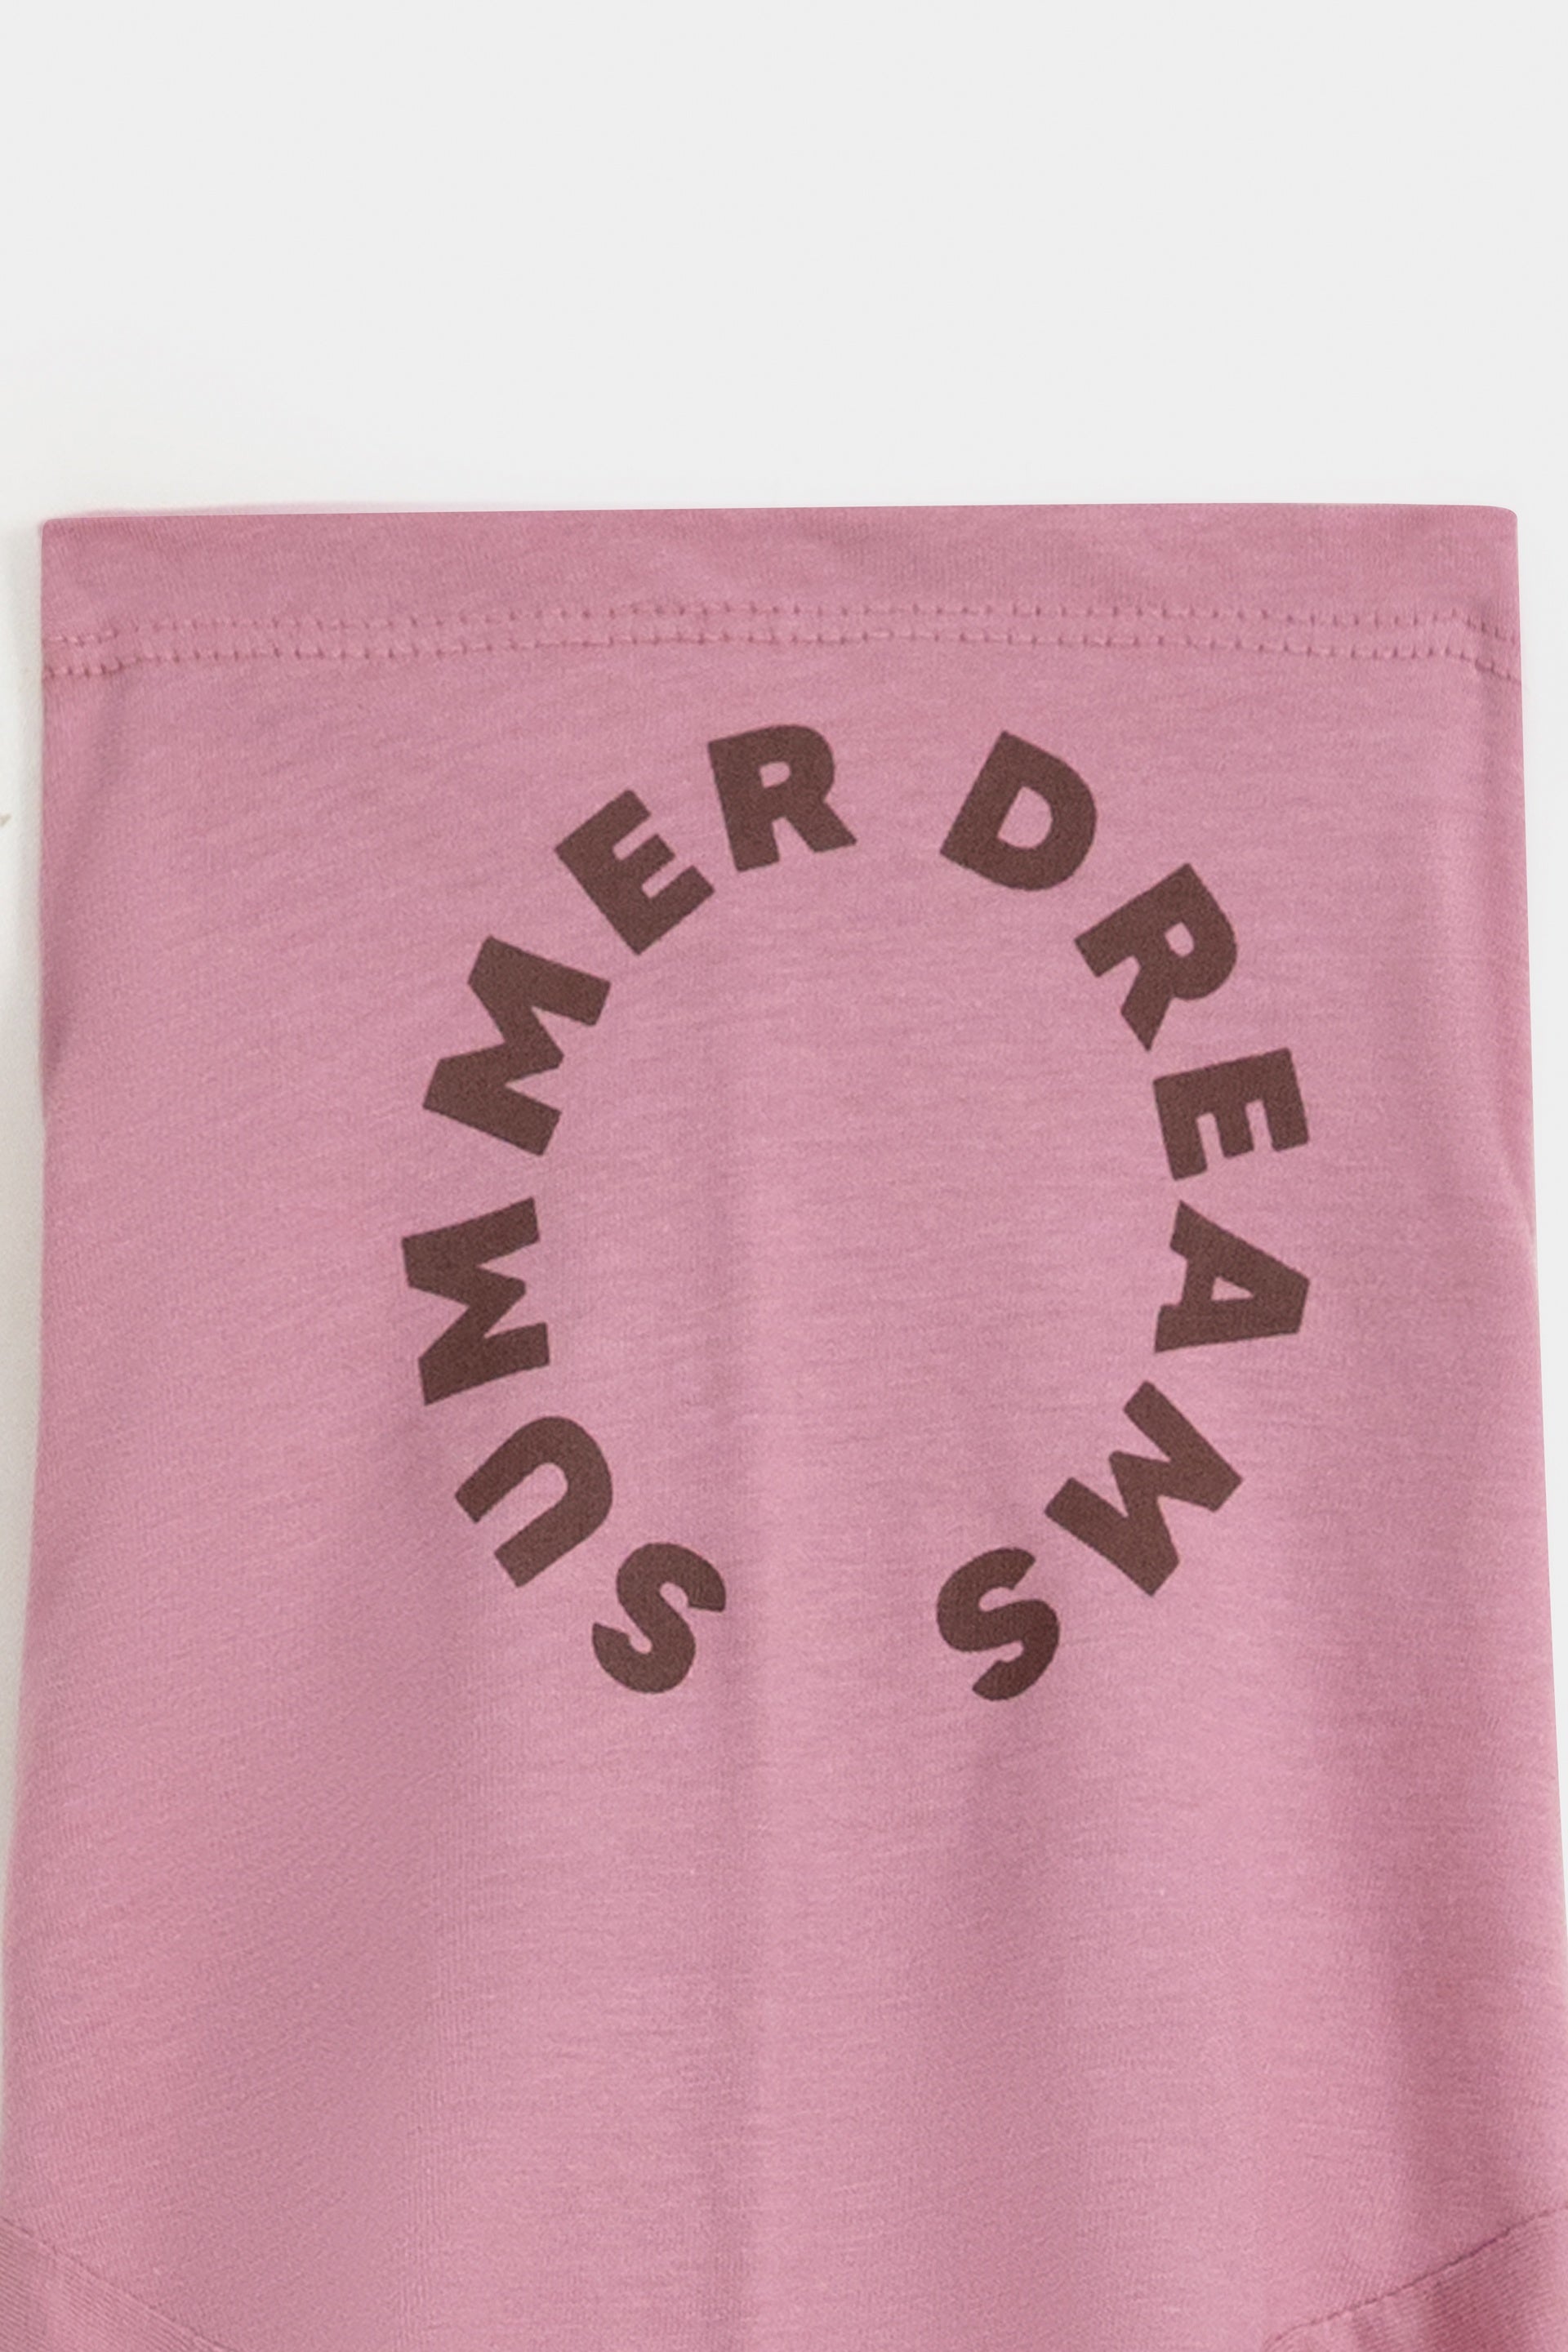 Sumer Dream Graphic T-Shirt